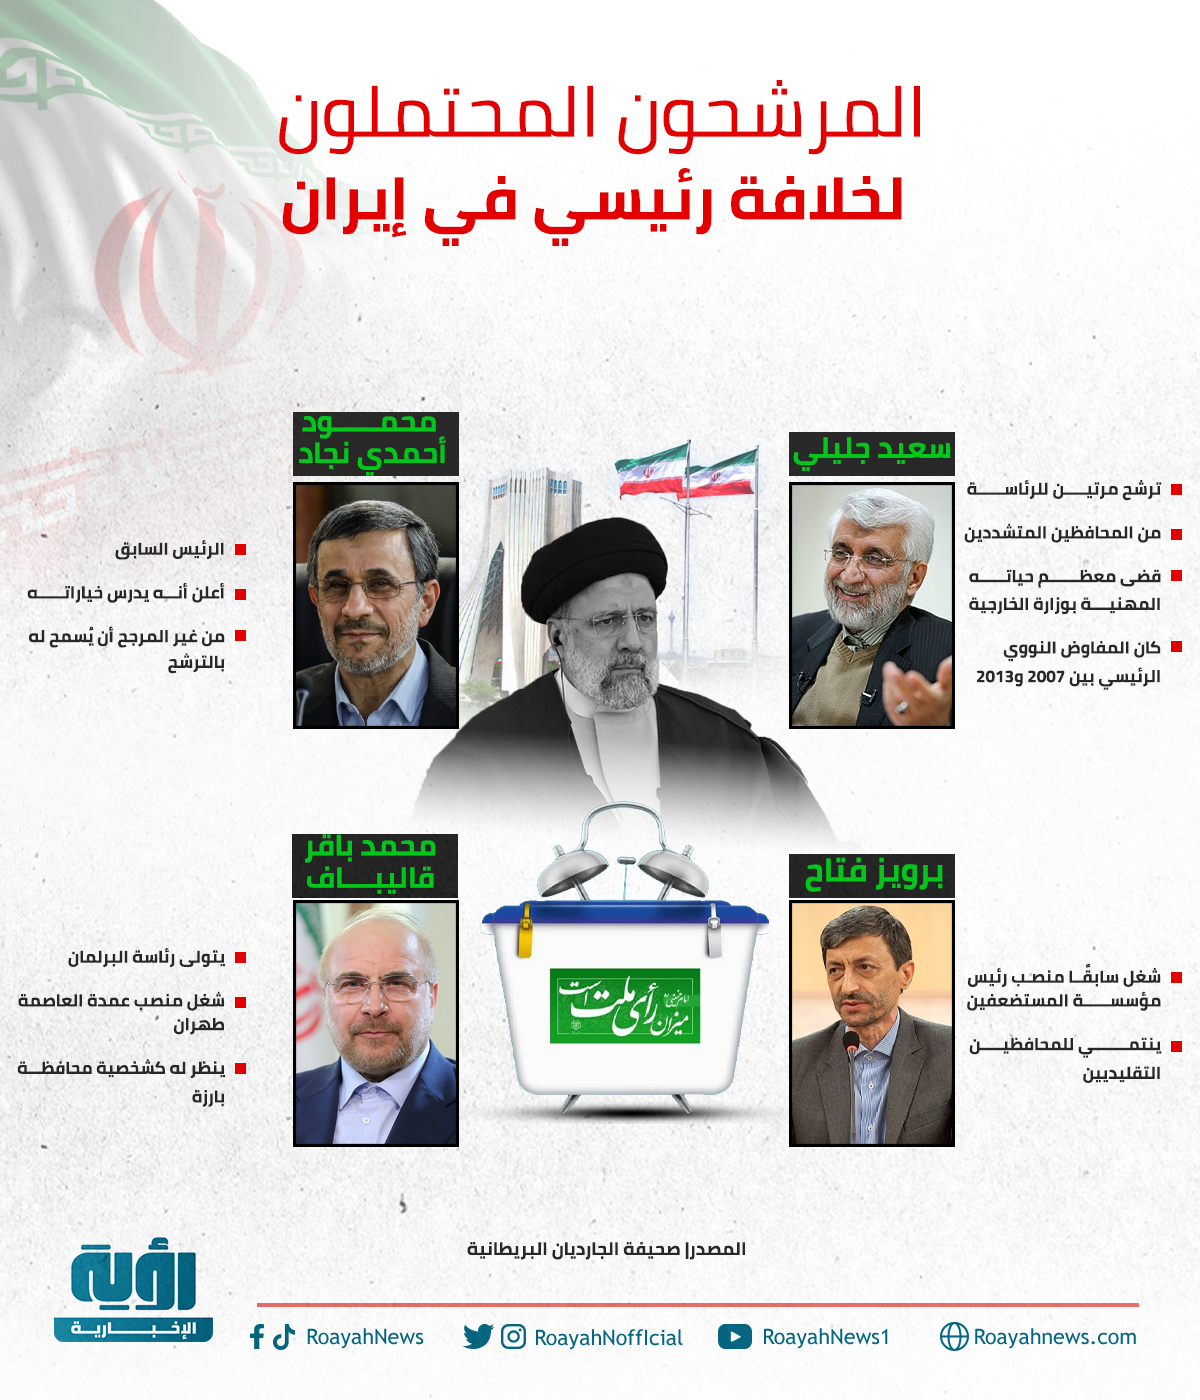 المرشحون المحتملون لخلافة رئيسي في إيران موقع 1